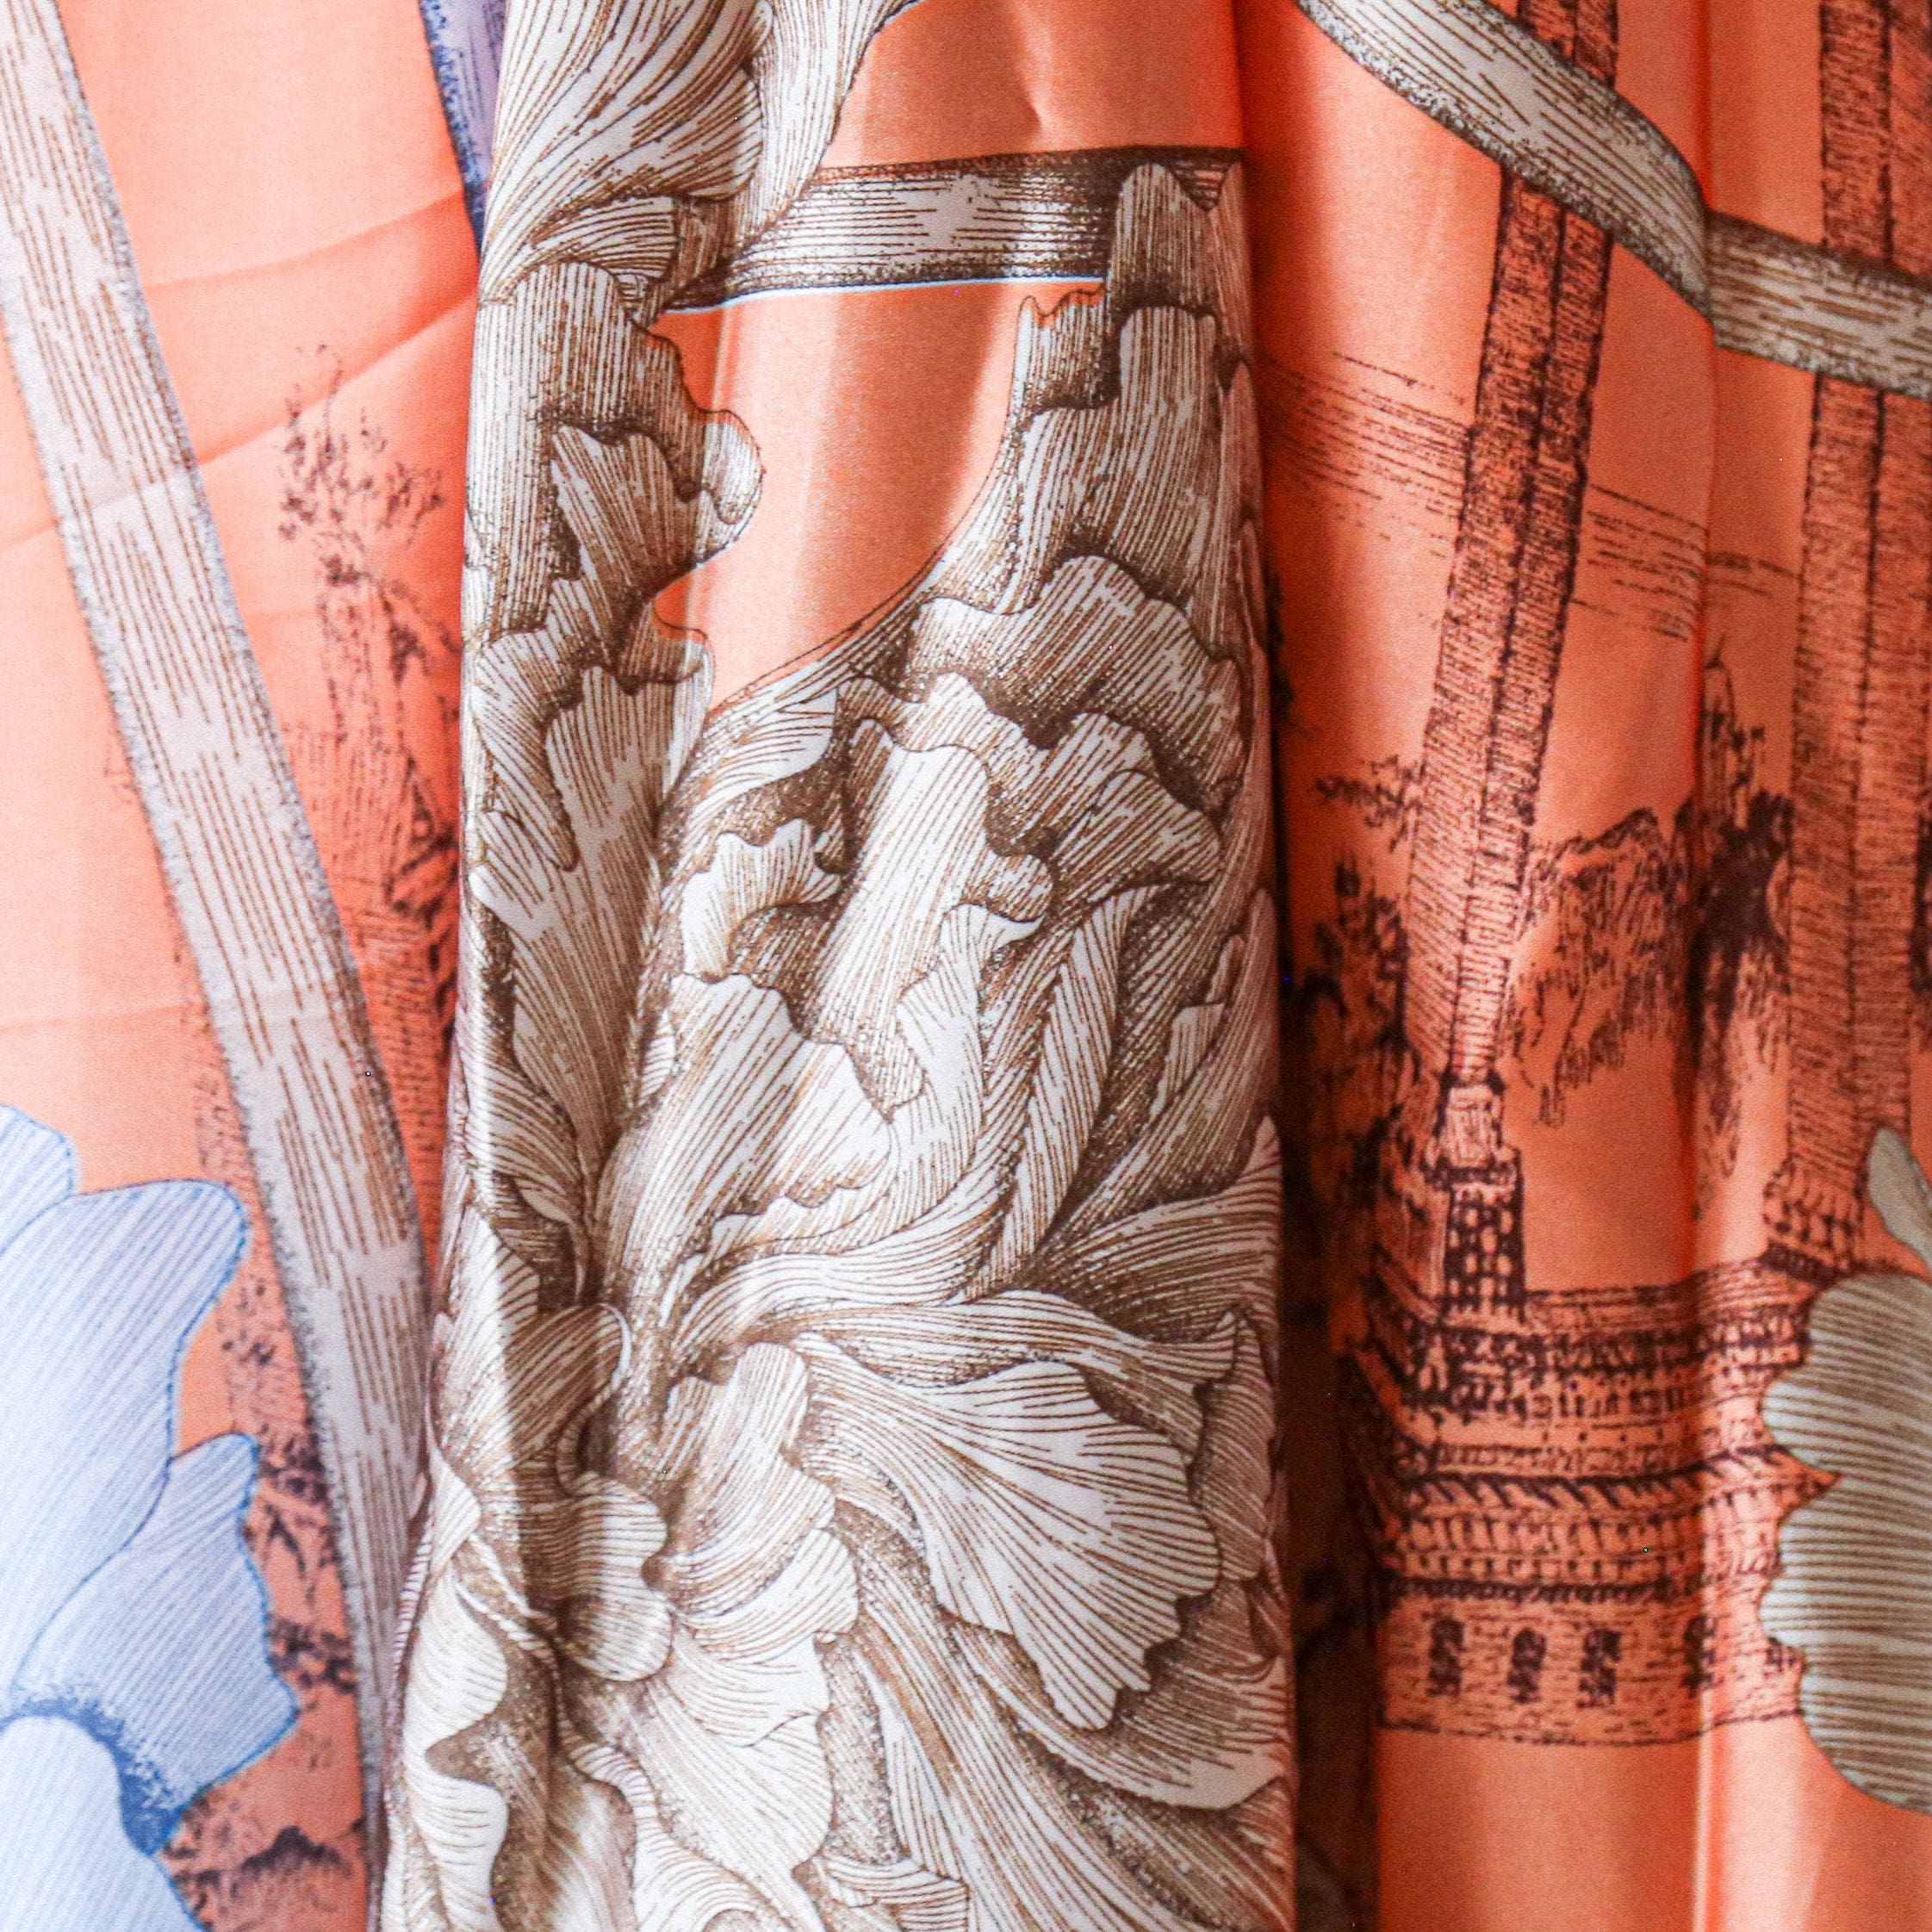 shawl Courland - Orange - shawl